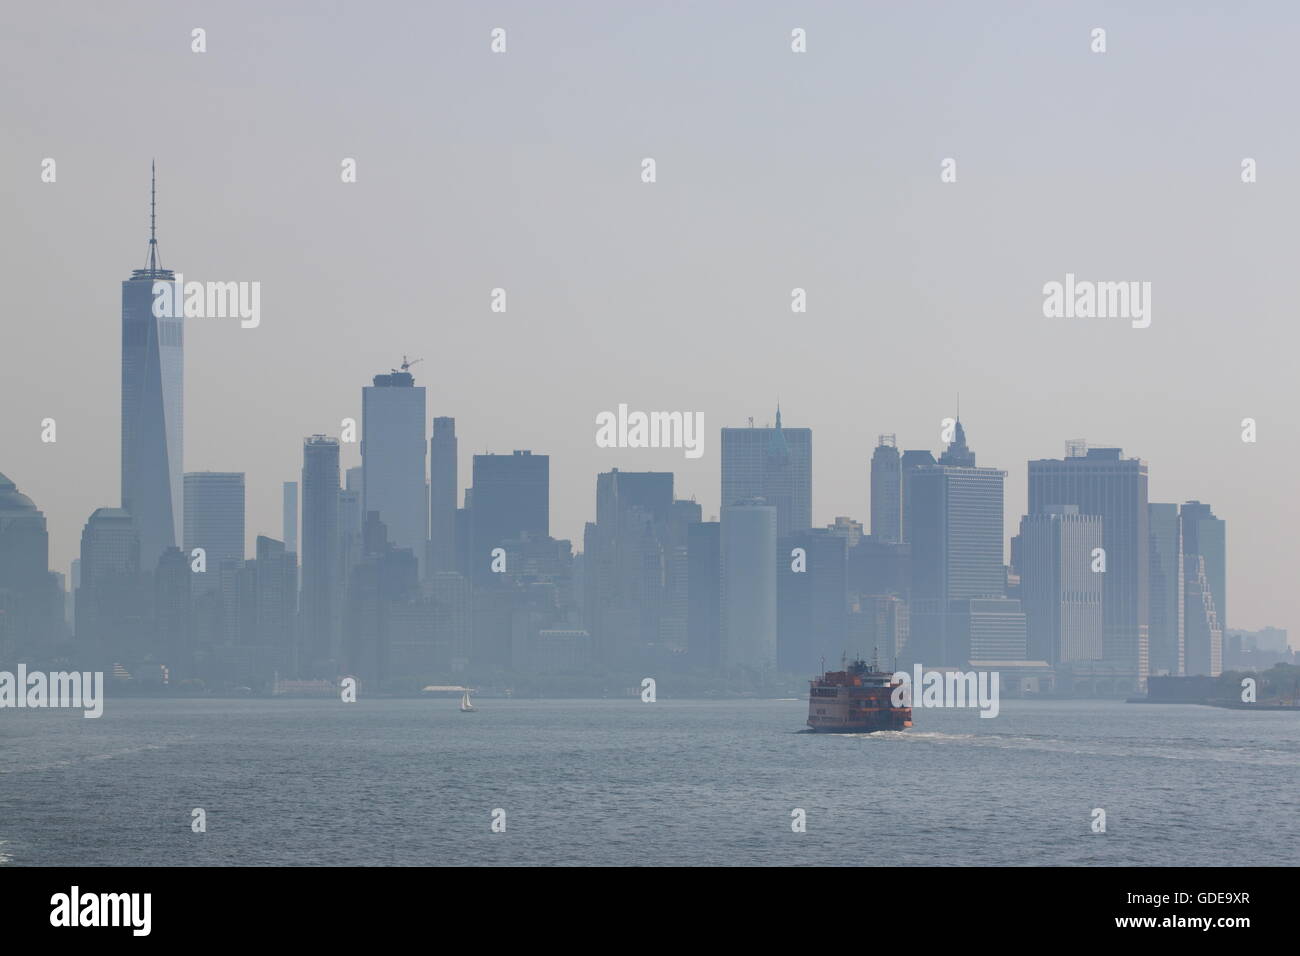 Lower Manhattan view, NYC, USA. Stock Photo